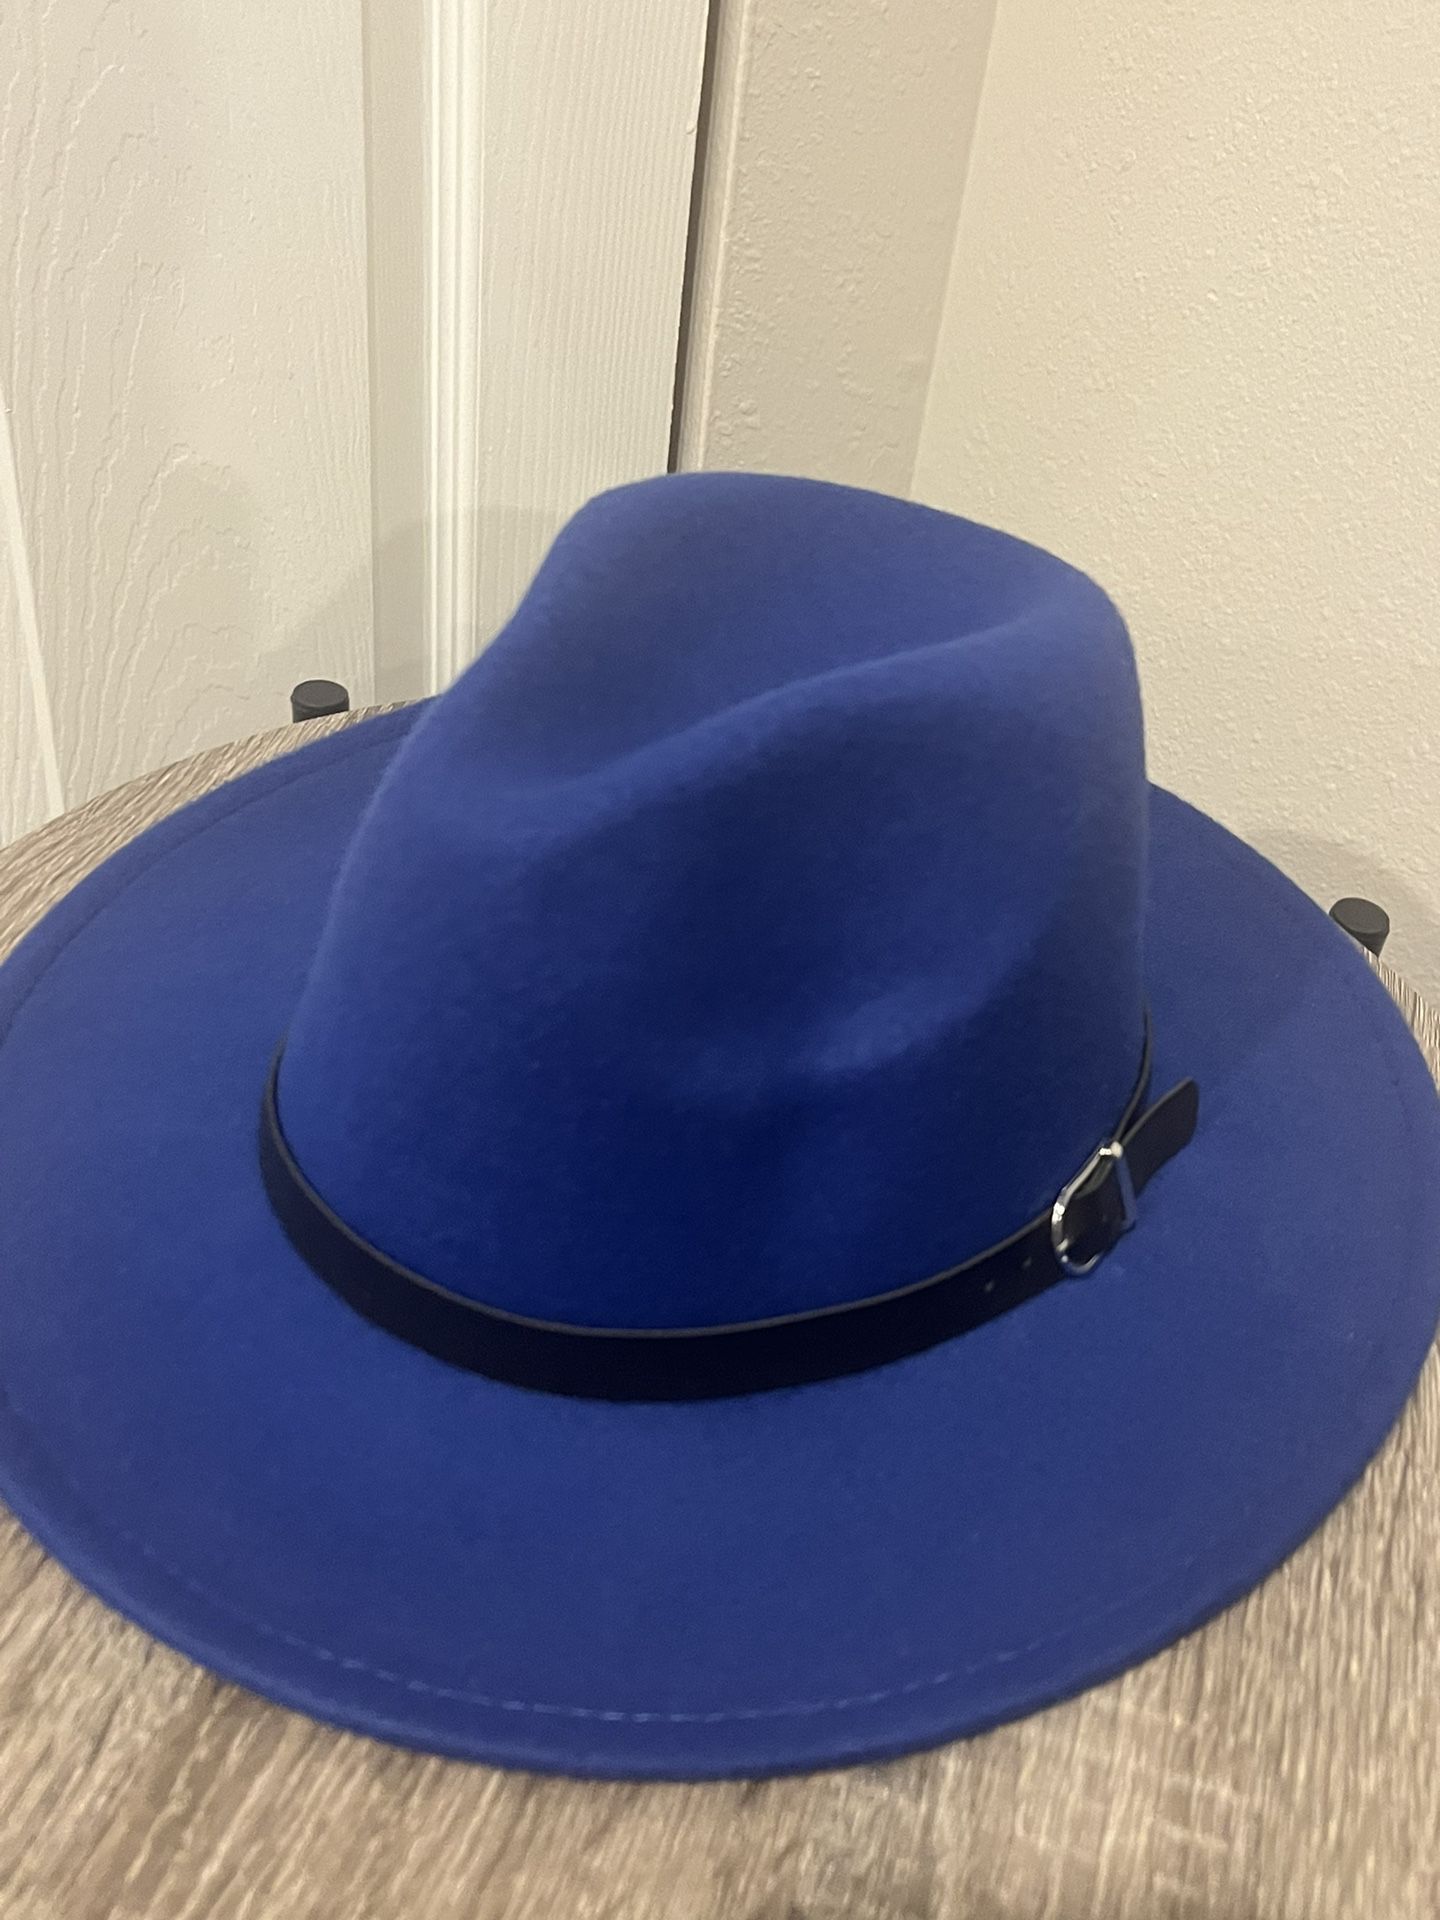 A Blue cowboy Hat